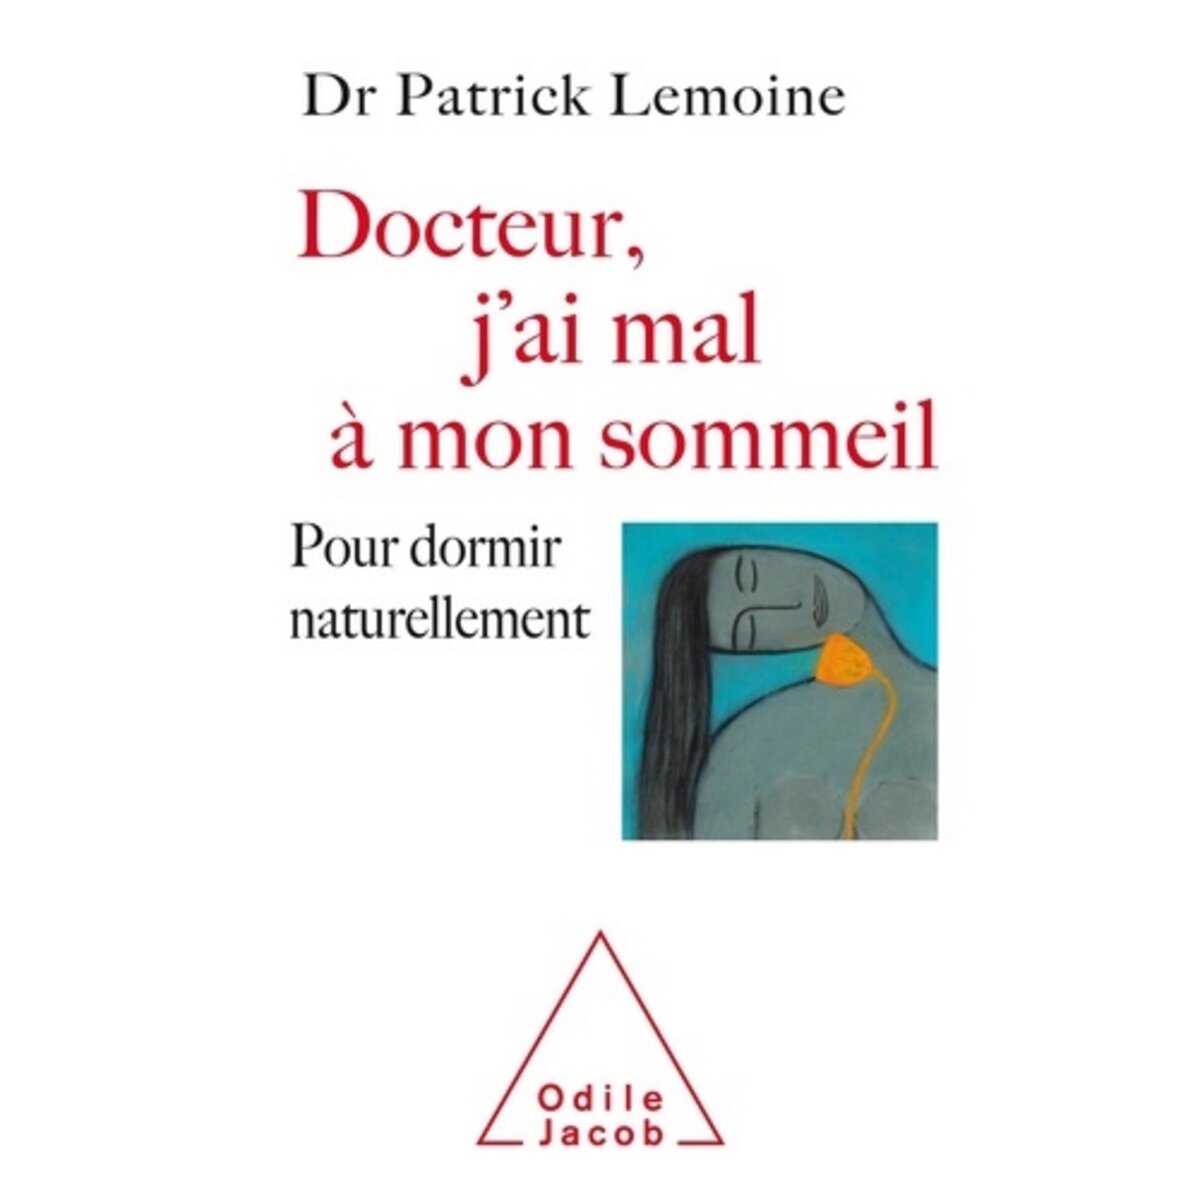  DOCTEUR, J'AI MAL A MON SOMMEIL. POUR DORMIR NATURELLEMENT, Lemoine Patrick